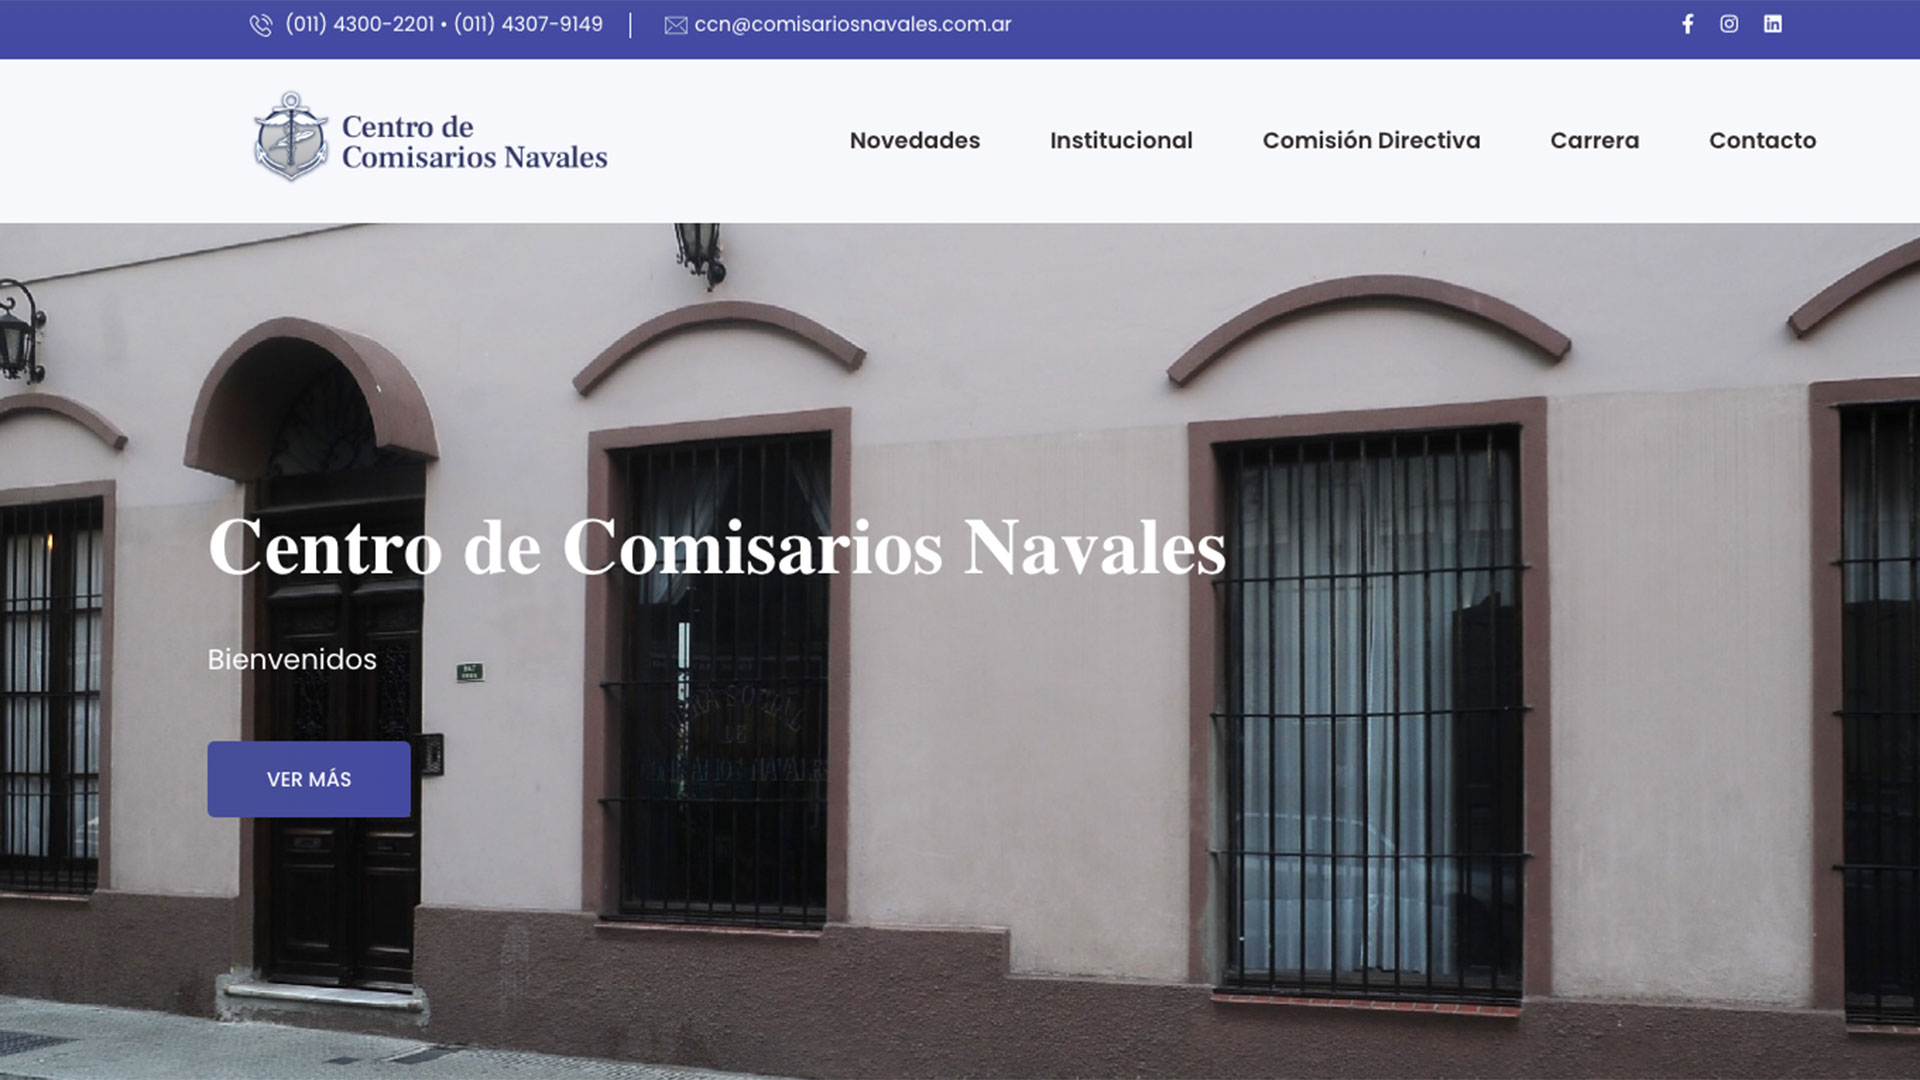 El Centro de Comisarios Navales, fundado en 1917, tiene hoy solo 128 socios, de los cuales la gran mayoría están retirados